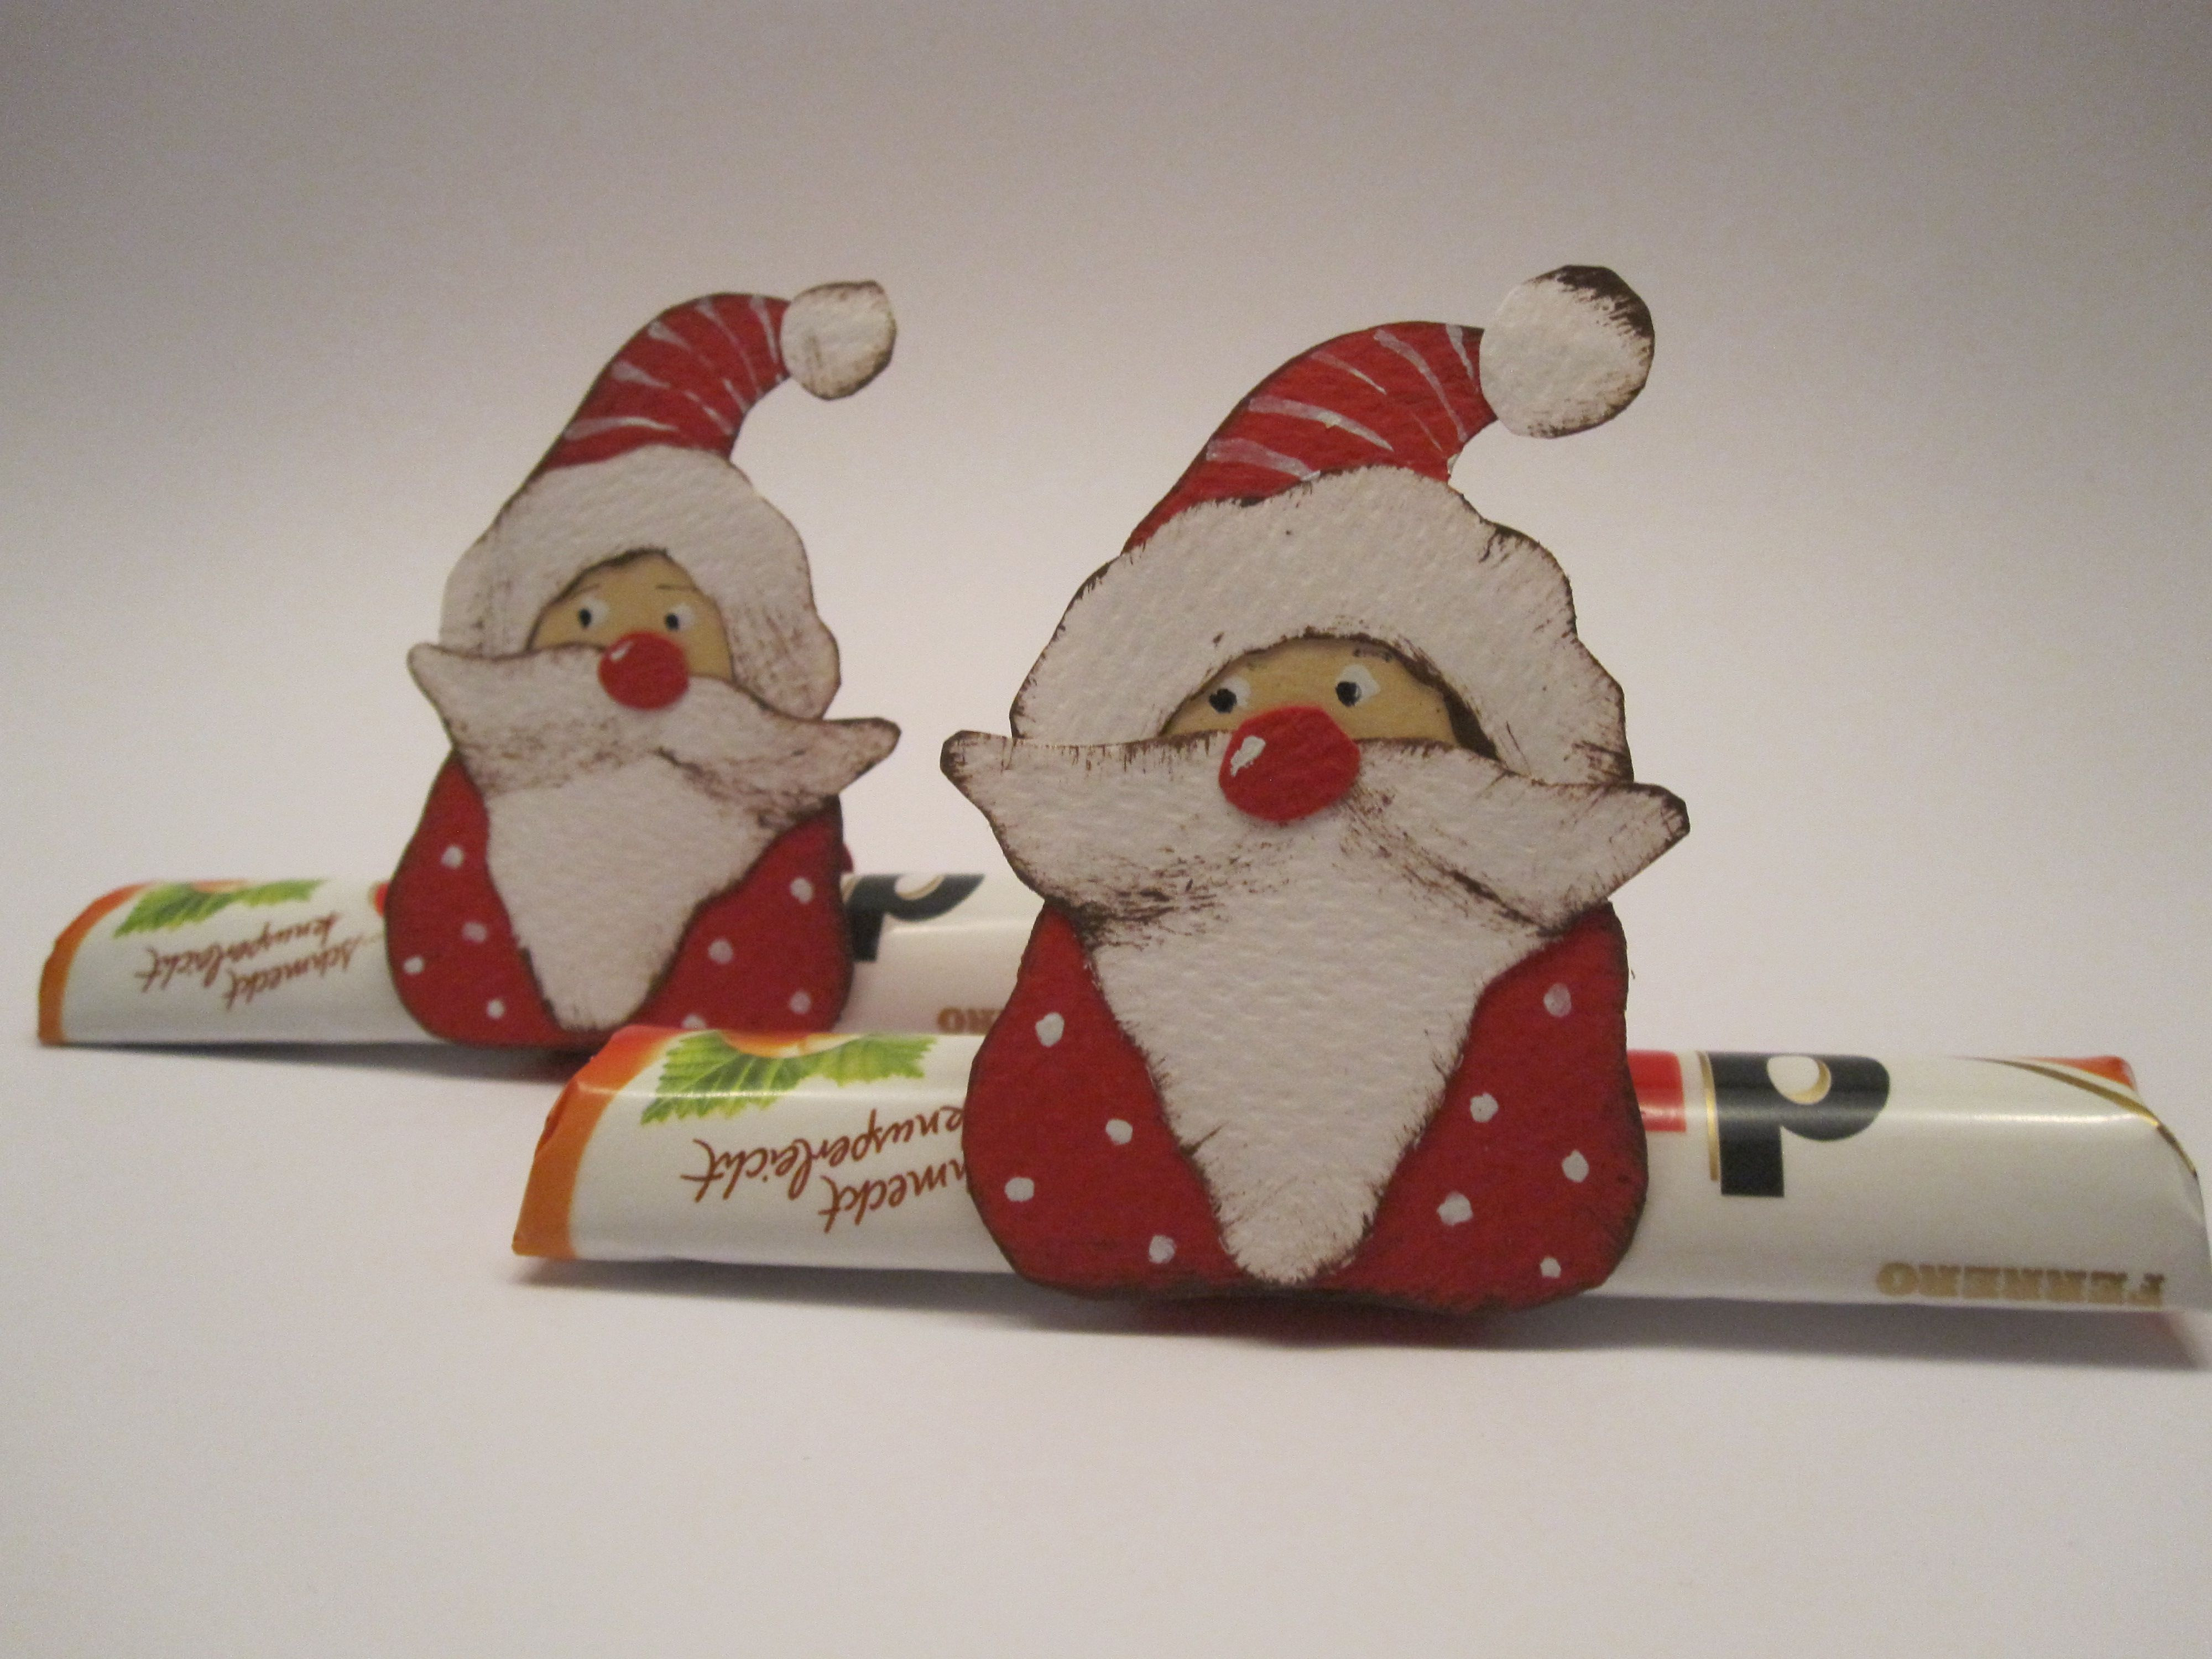 Bastelideen Weihnachten Geschenke
 Einen Weihnachtsmann als Geschenk aus Papier basteln